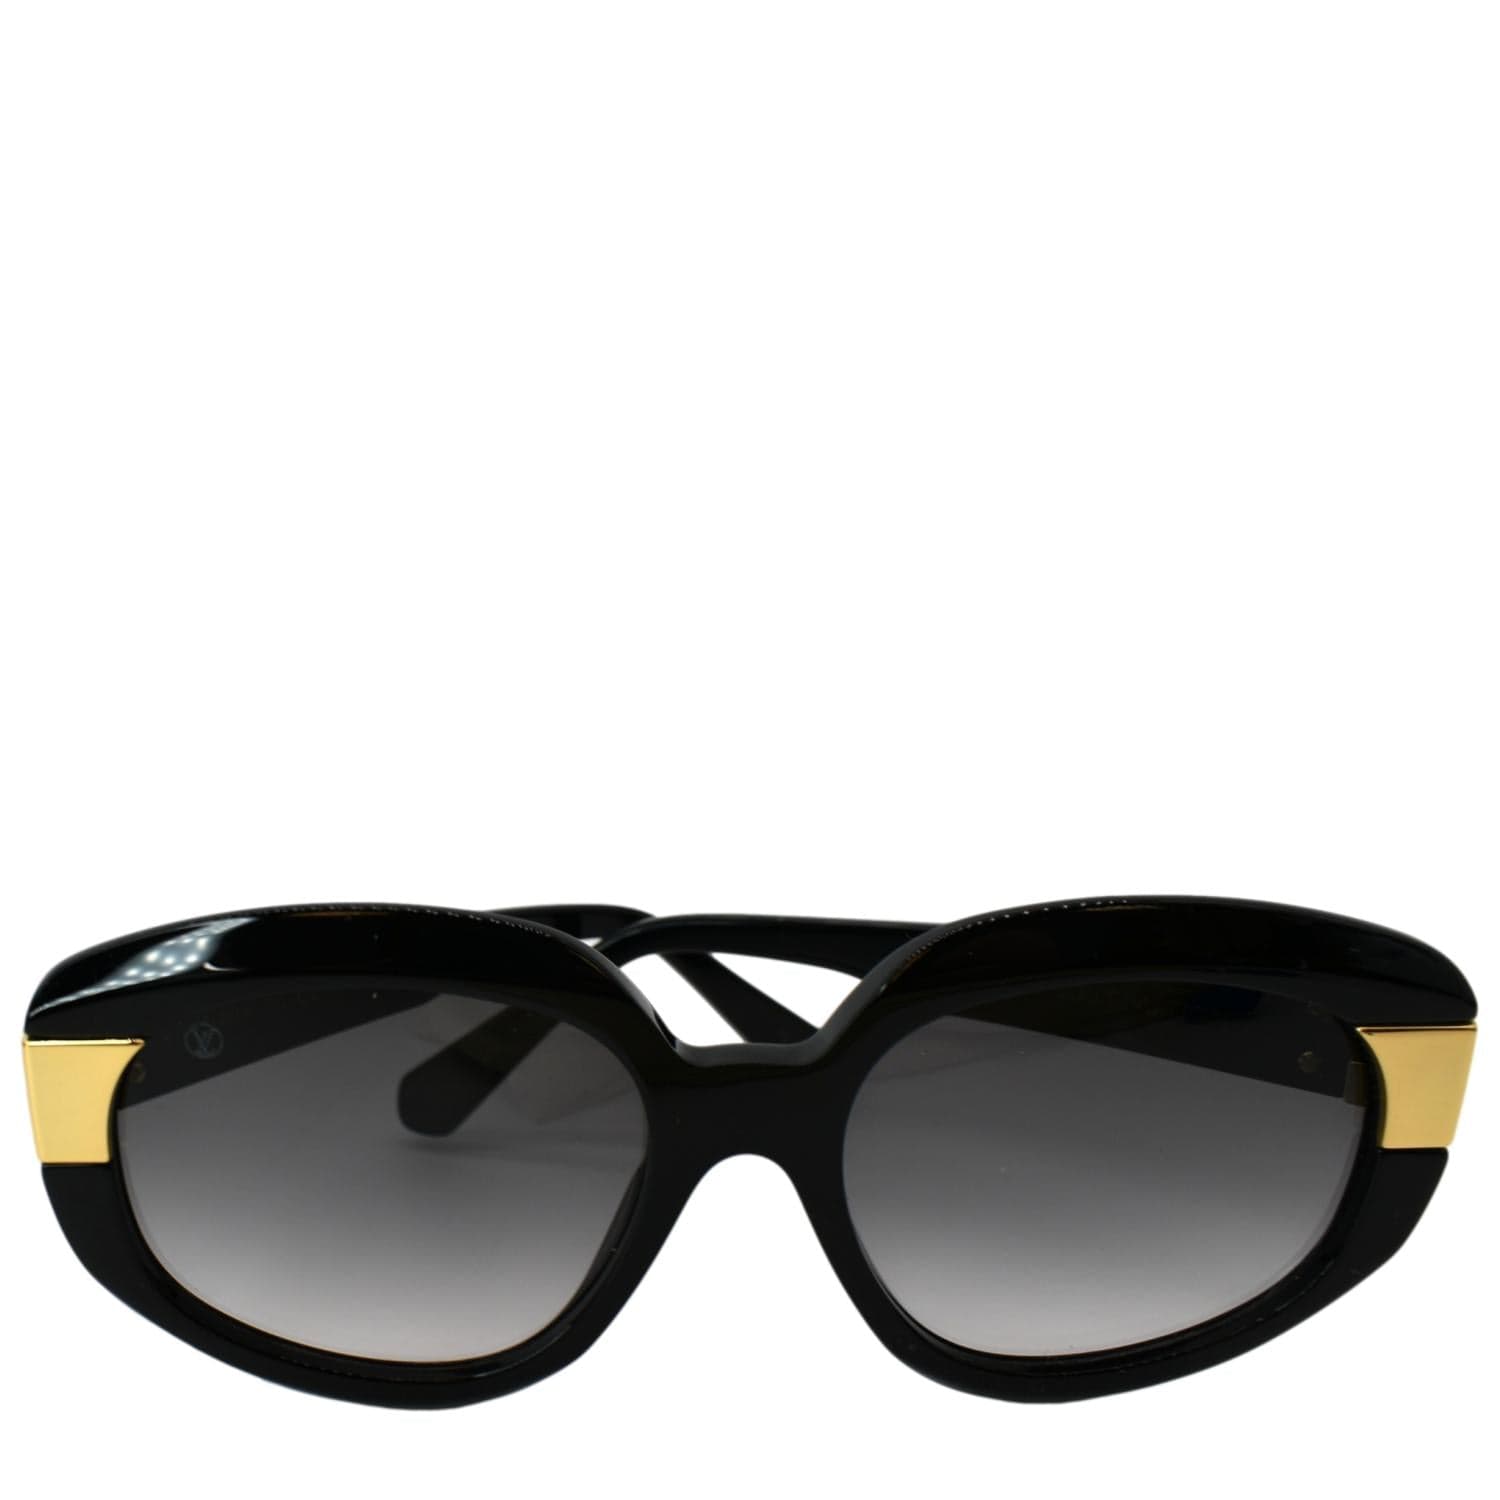 Sunglasses Louis Vuitton Black in Plastic - 32464240